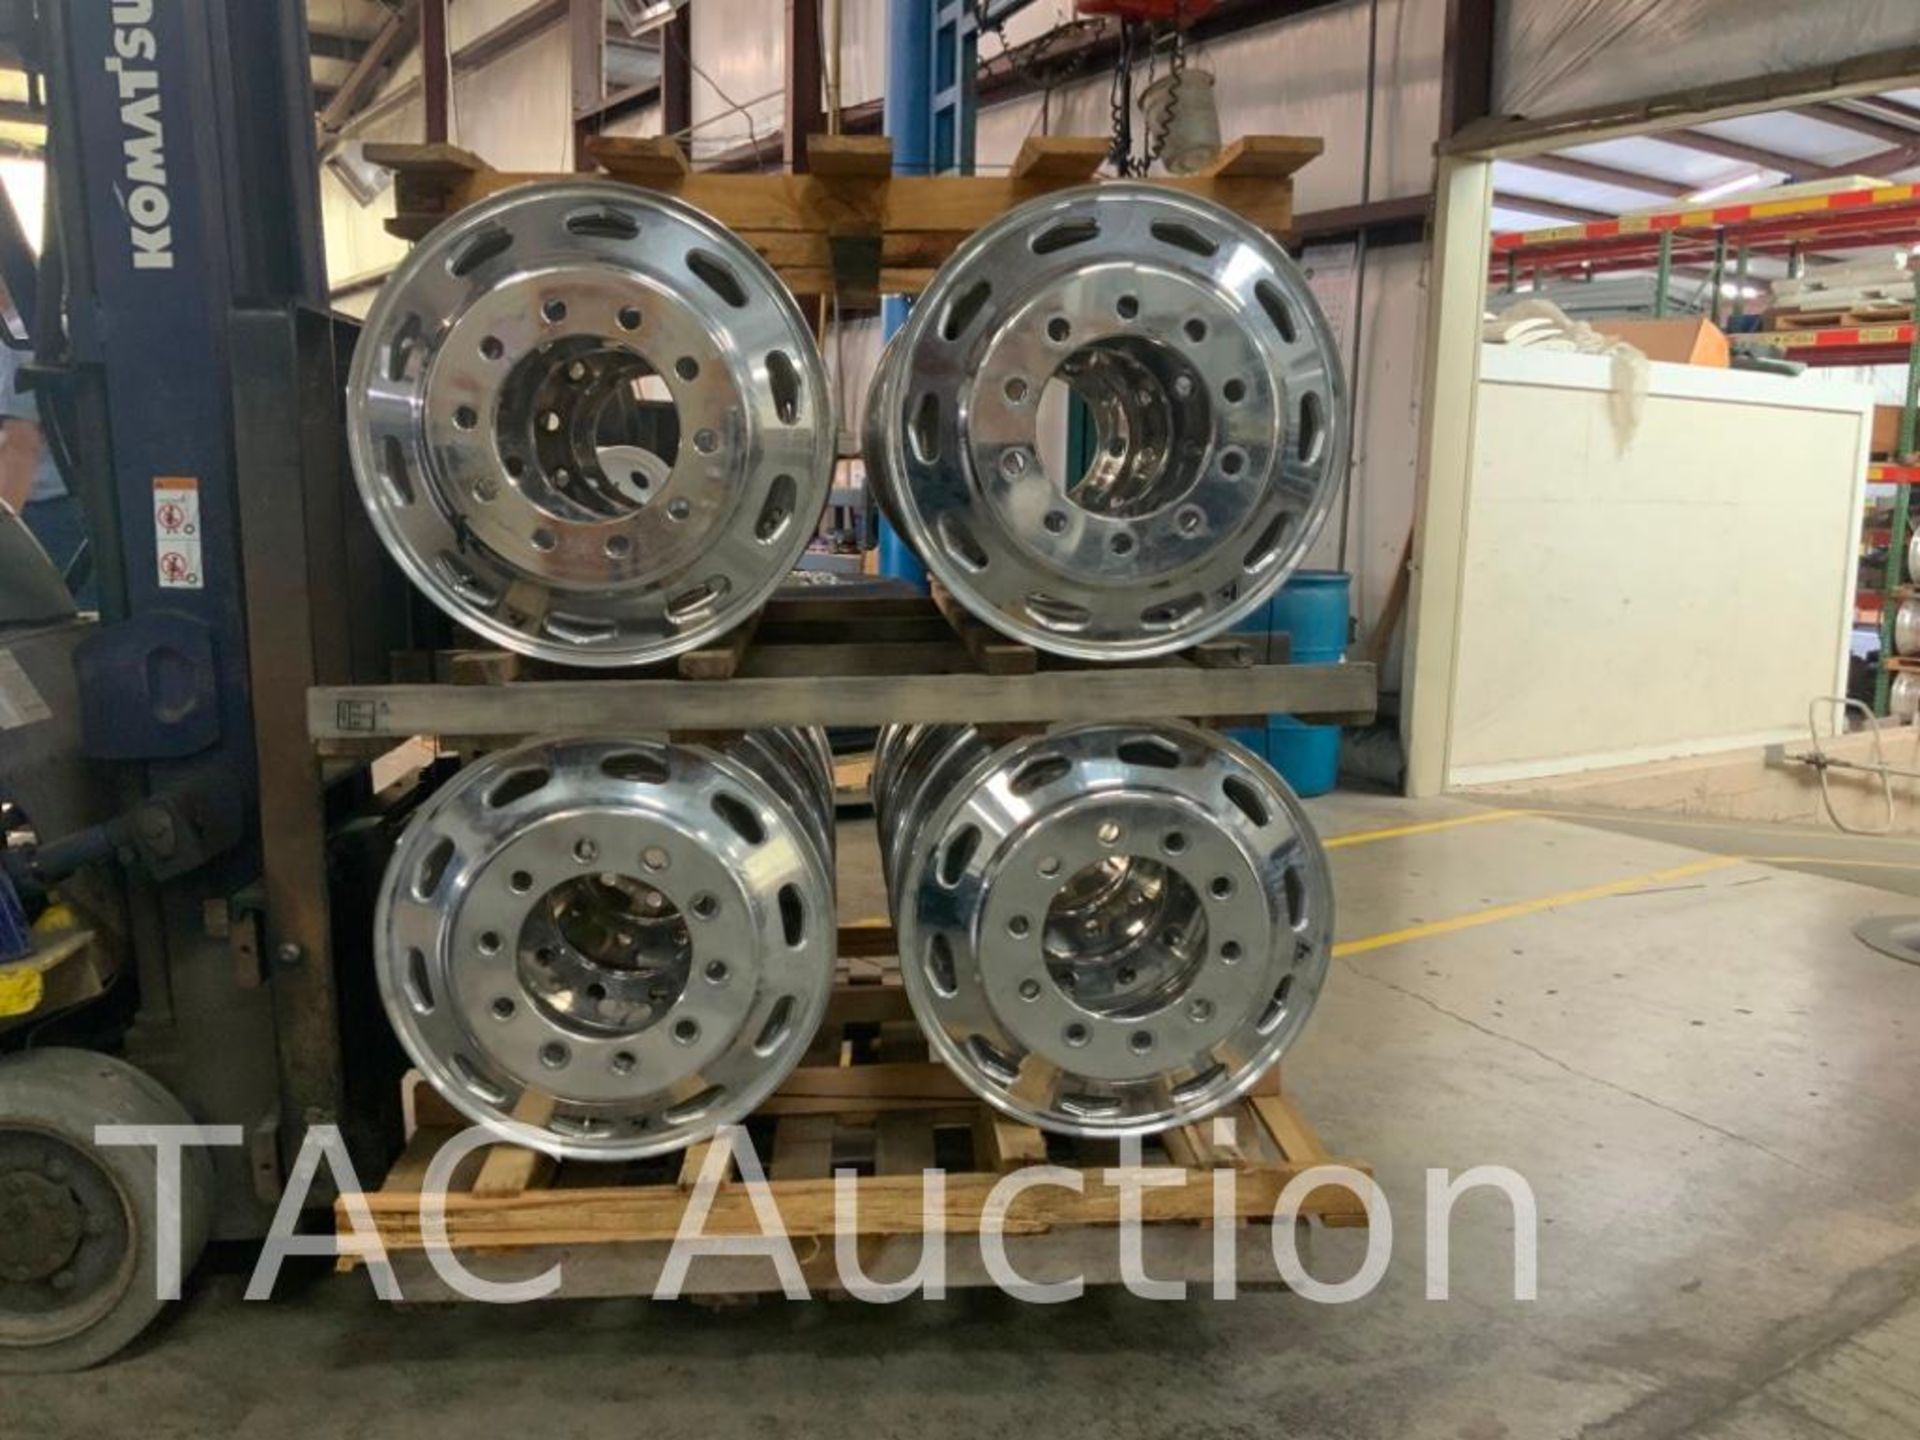 New (16) Accuride Aluminum Wheels 8.25X22.5 - Image 3 of 3